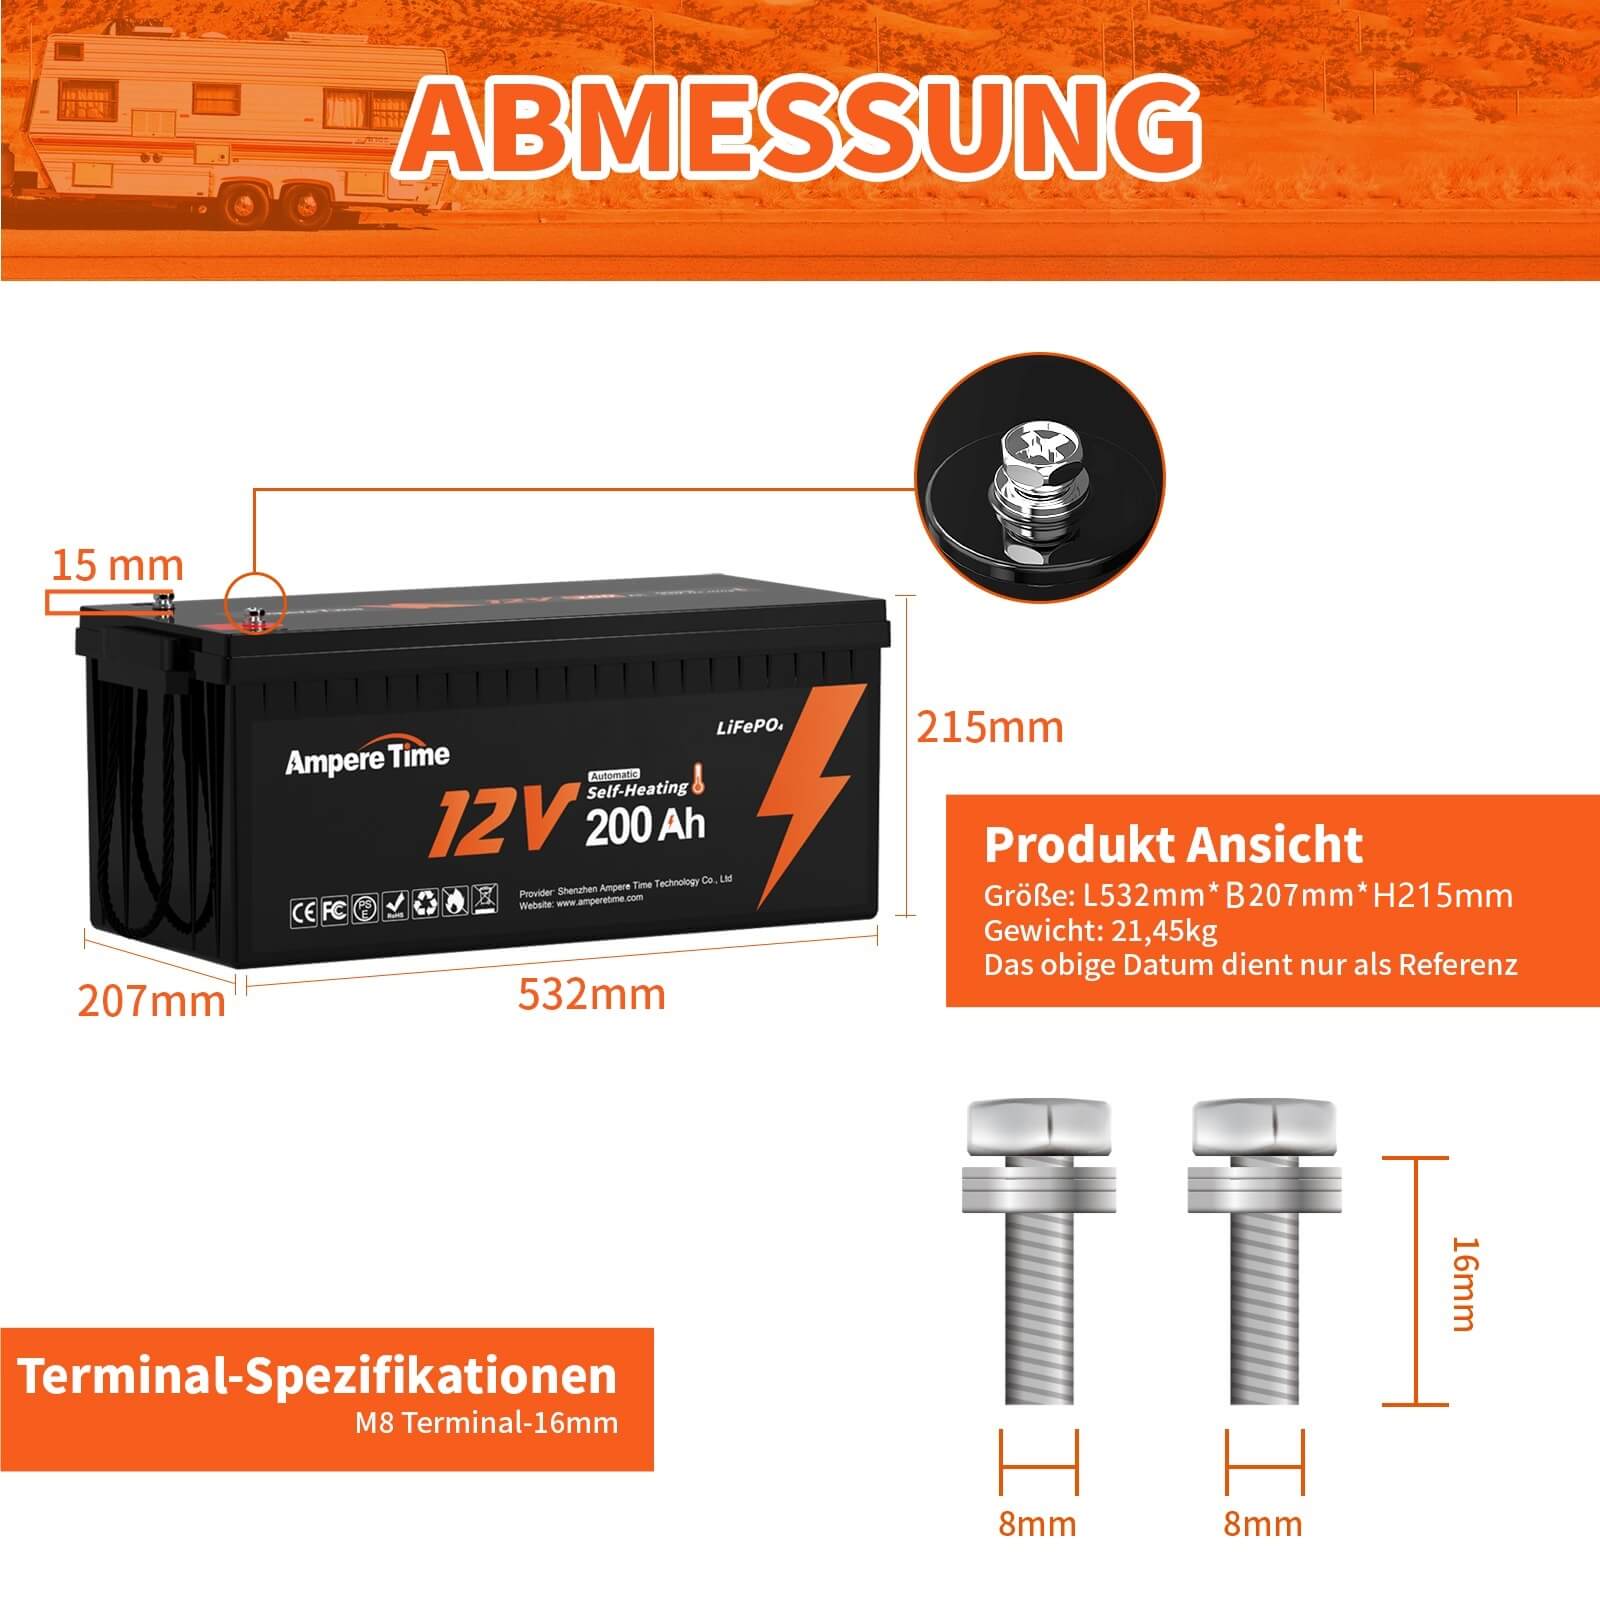 【0% Mehrwertsteuer】Ampere Time Selbsterwärmende 12V Akku 200Ah LiFePO4 Lithium-Batterie amperetime-de-free